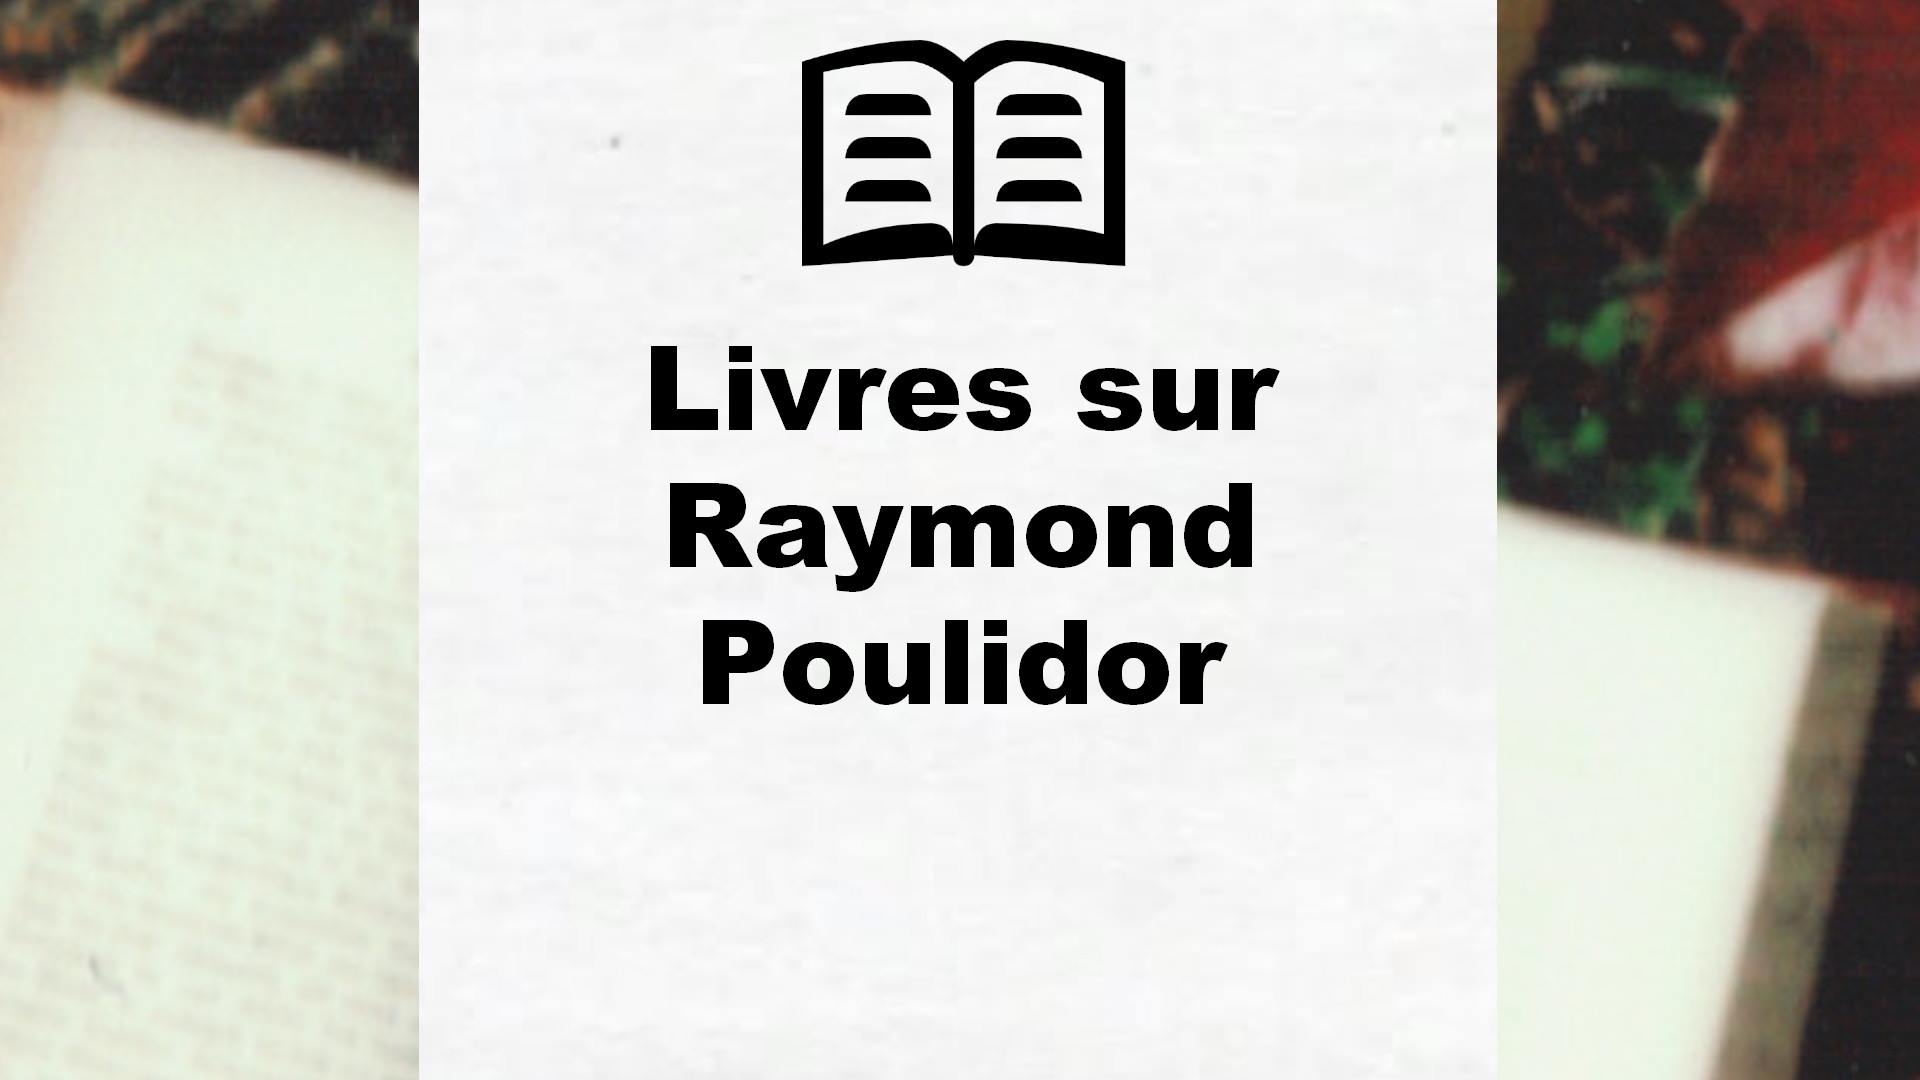 Livres sur Raymond Poulidor